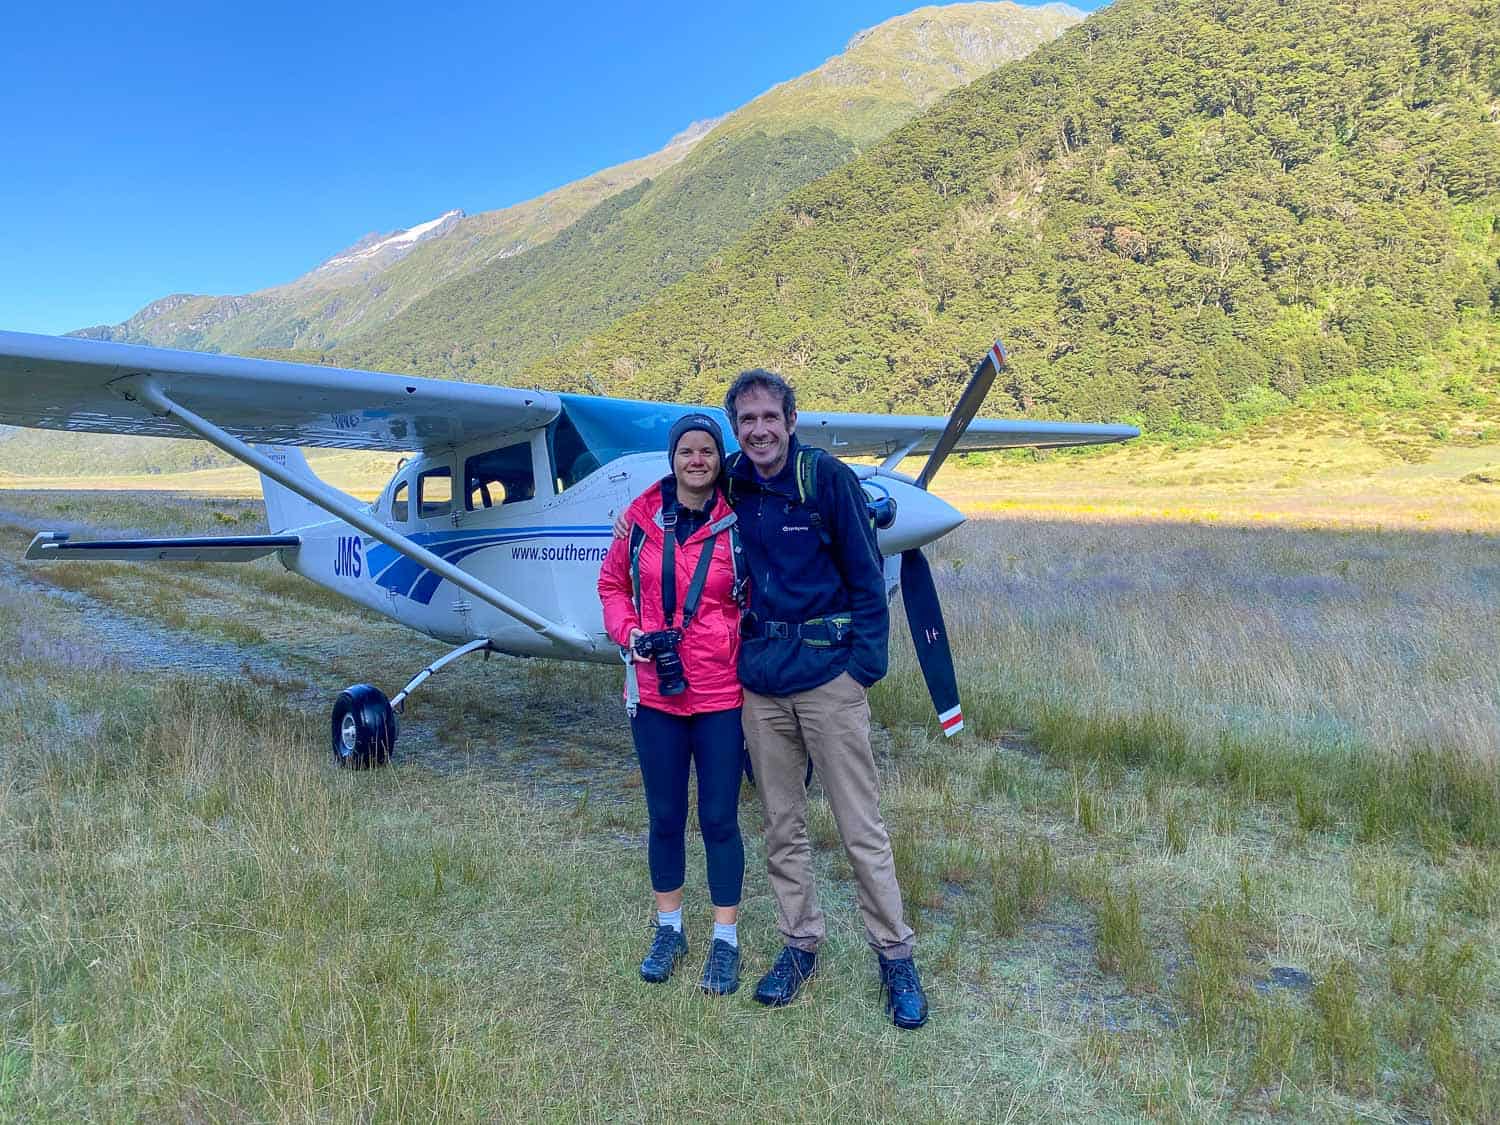 Siberia Experience plane ride, Wanaka, New Zealand